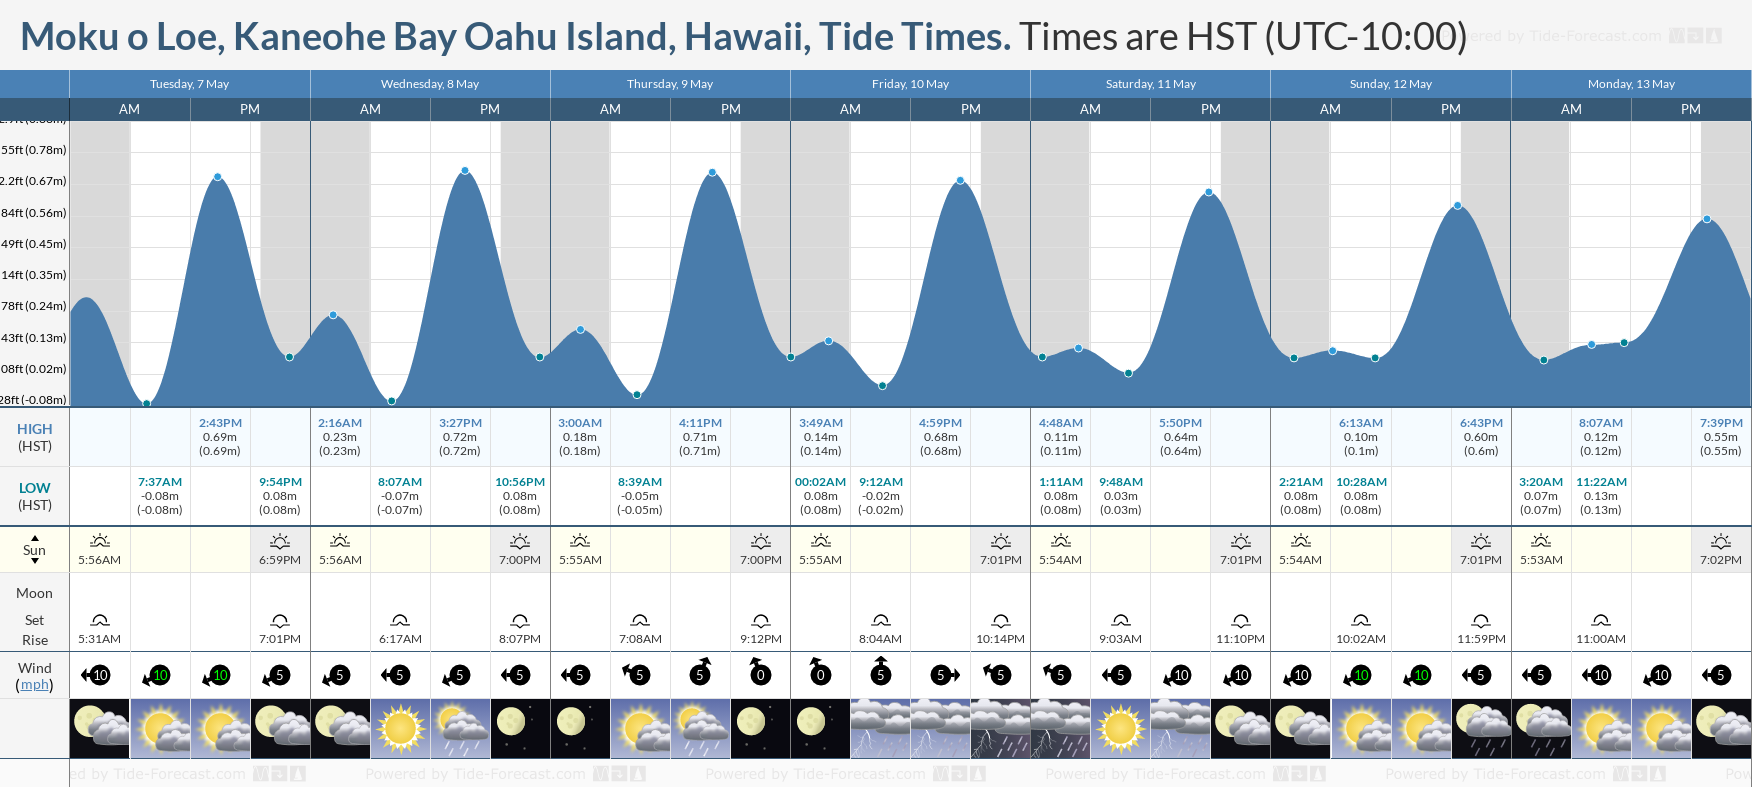 Moku o Loe, Kaneohe Bay Oahu Island, Hawaii Tide Chart including high and low tide tide times for the next 7 days